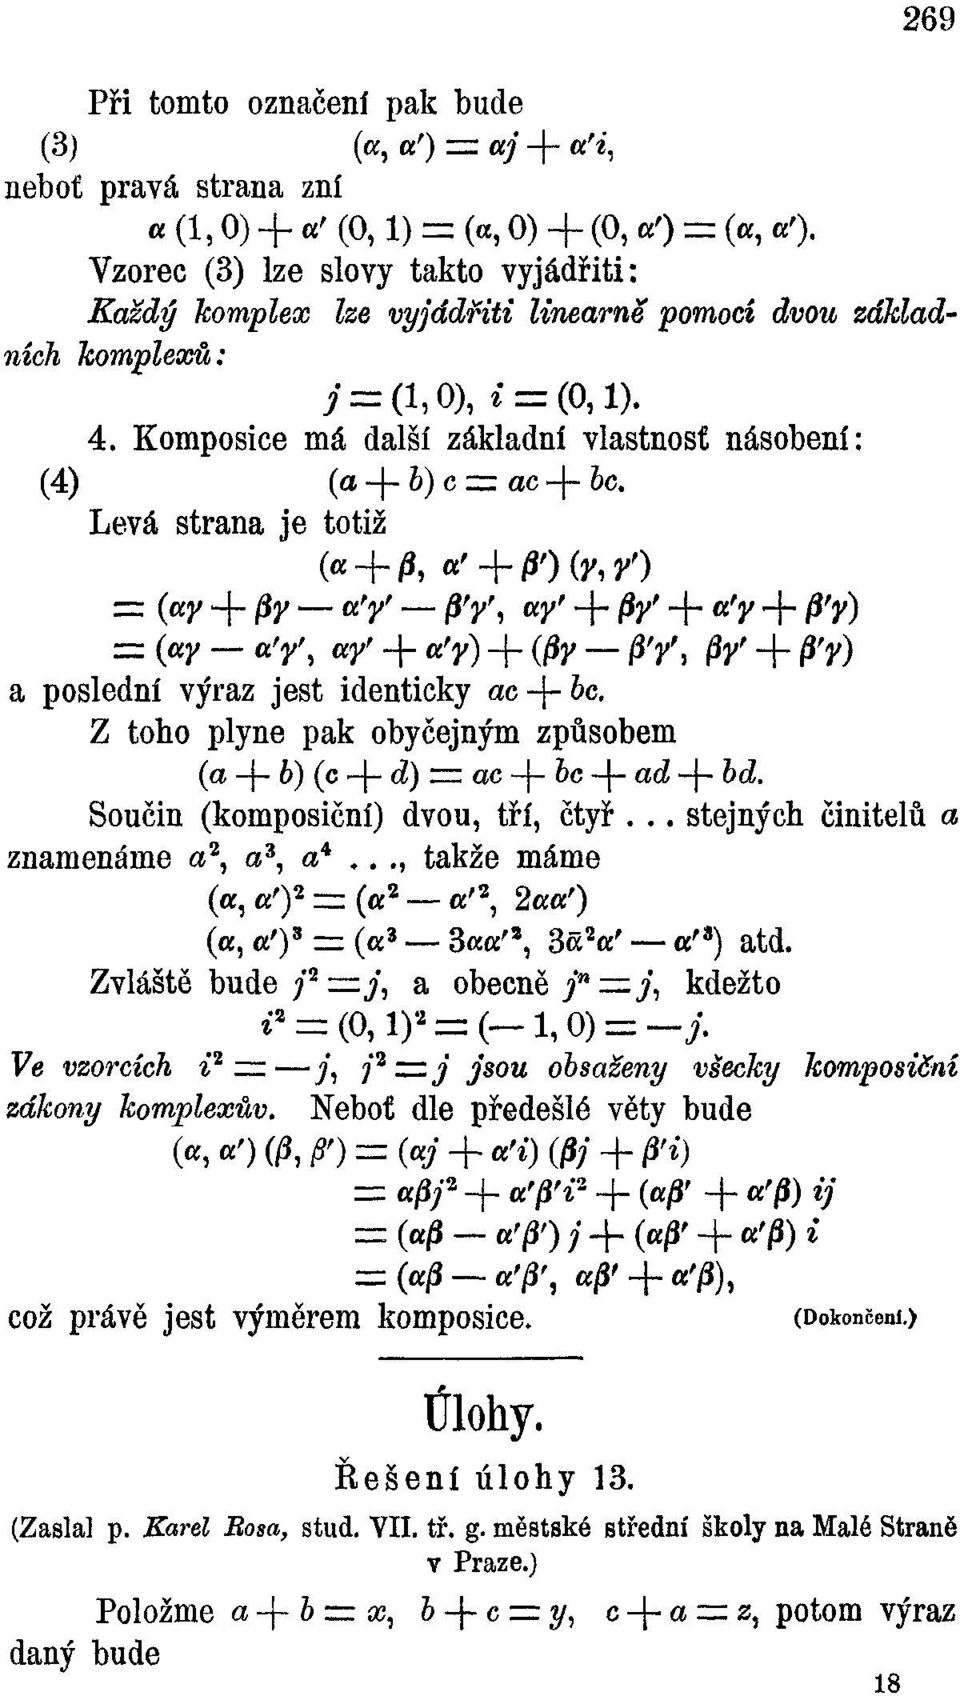 Komposice má další základní vlastnost násobení: (4) (a-\-b)cz=z ac-{- bc.